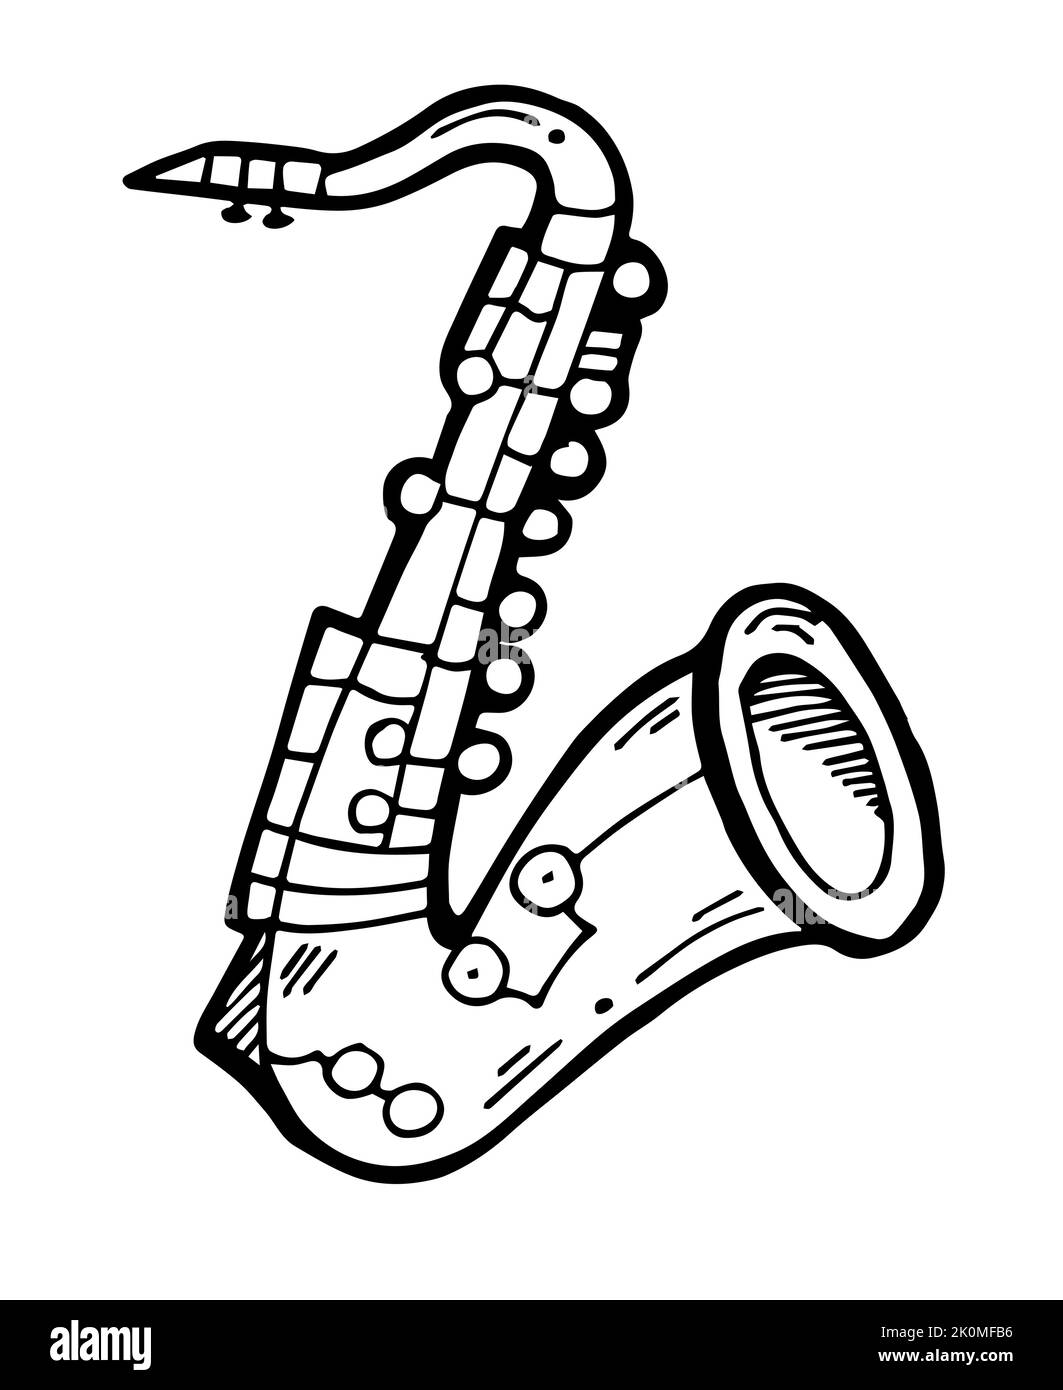 Instrument de vent musical saxophone. Instrument de musique pour jouer de la musique live. Esquisse dessinée à la main. Dessin avec de l'encre. Isolé sur blanc Illustration de Vecteur